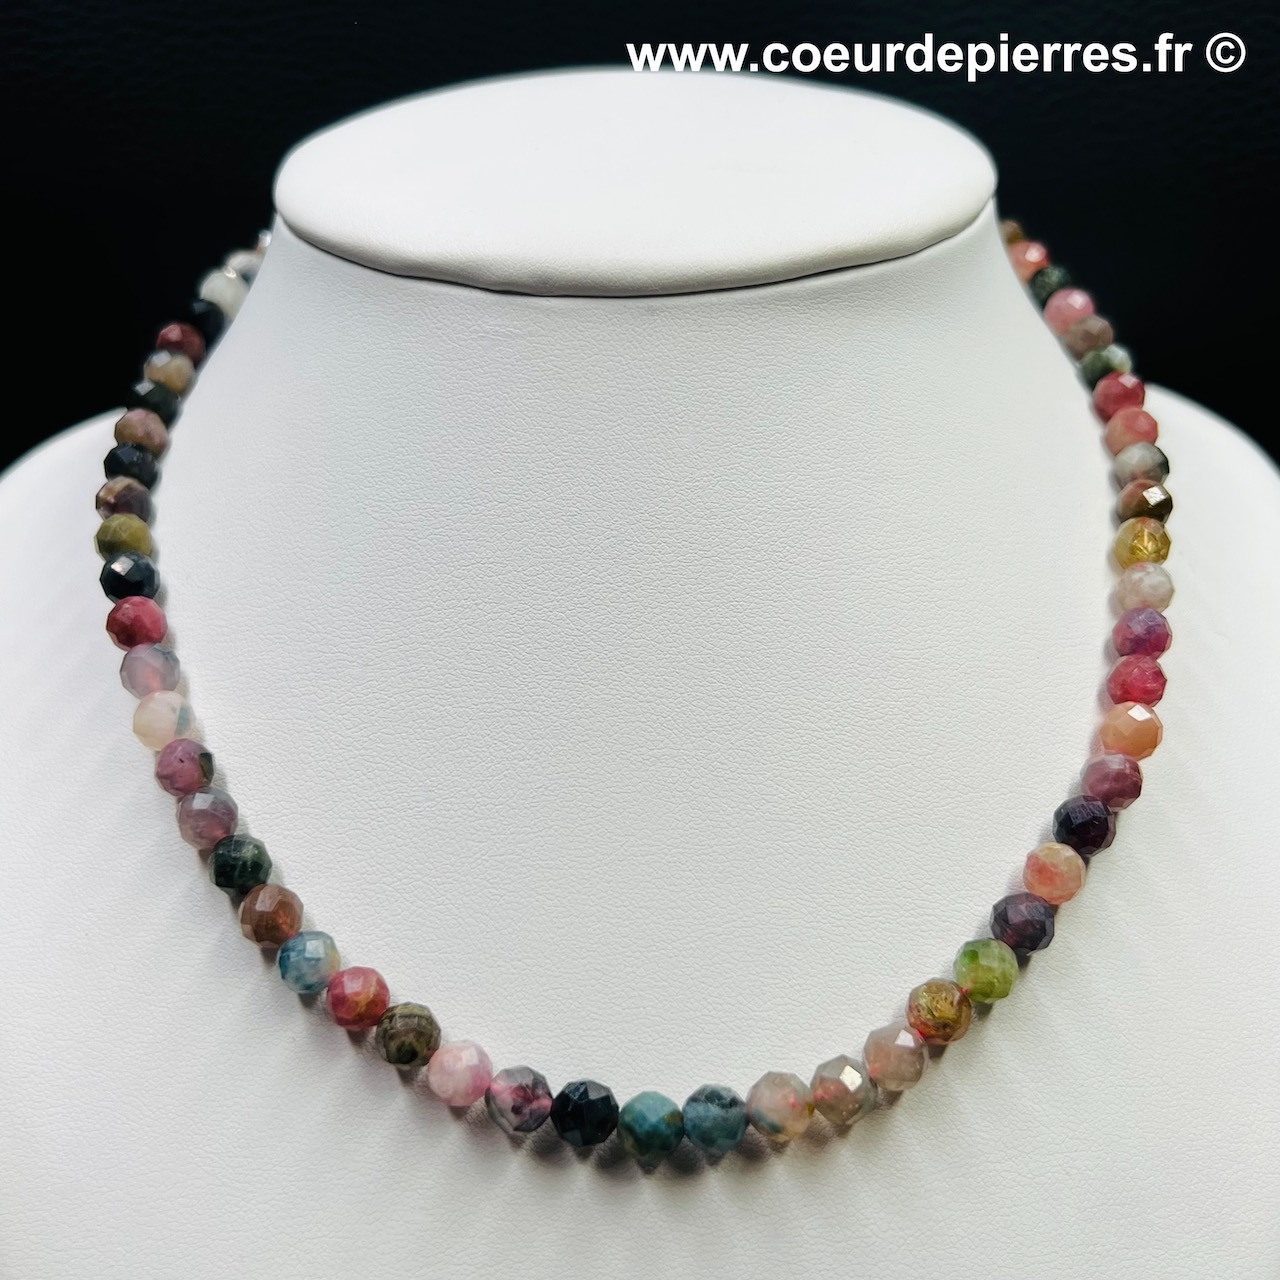 Collier tourmaline multicolore du Brésil « perles facettées » (réf ctim4)